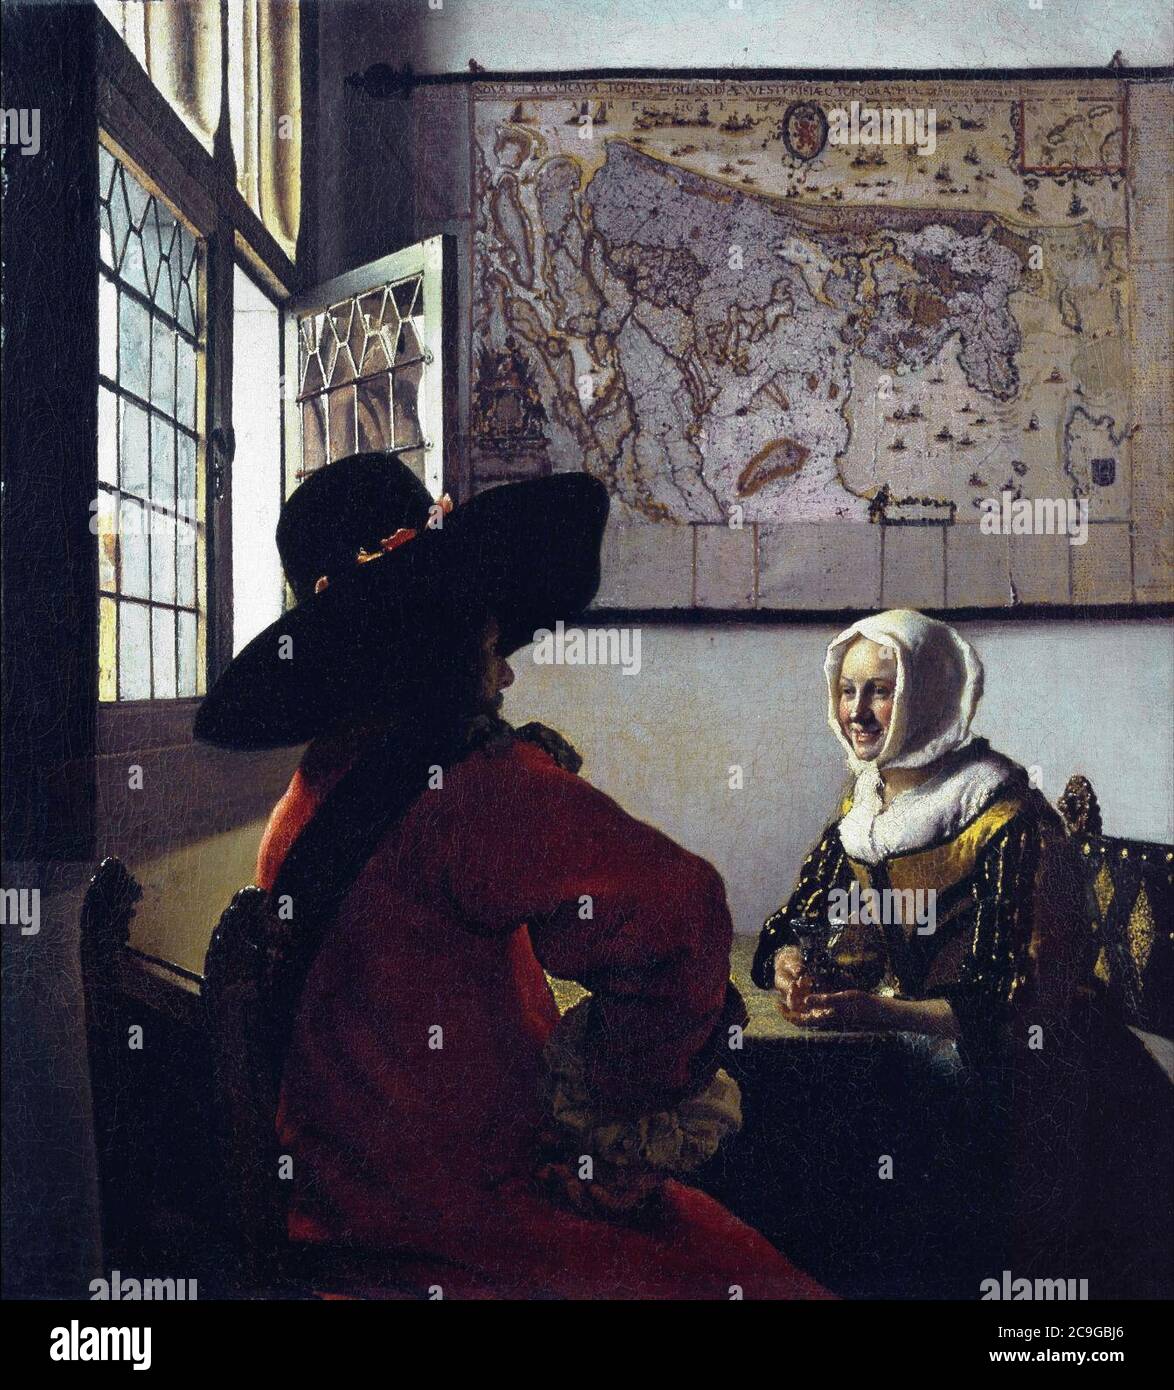 Jan Vermeer van Delft 023. Stock Photo